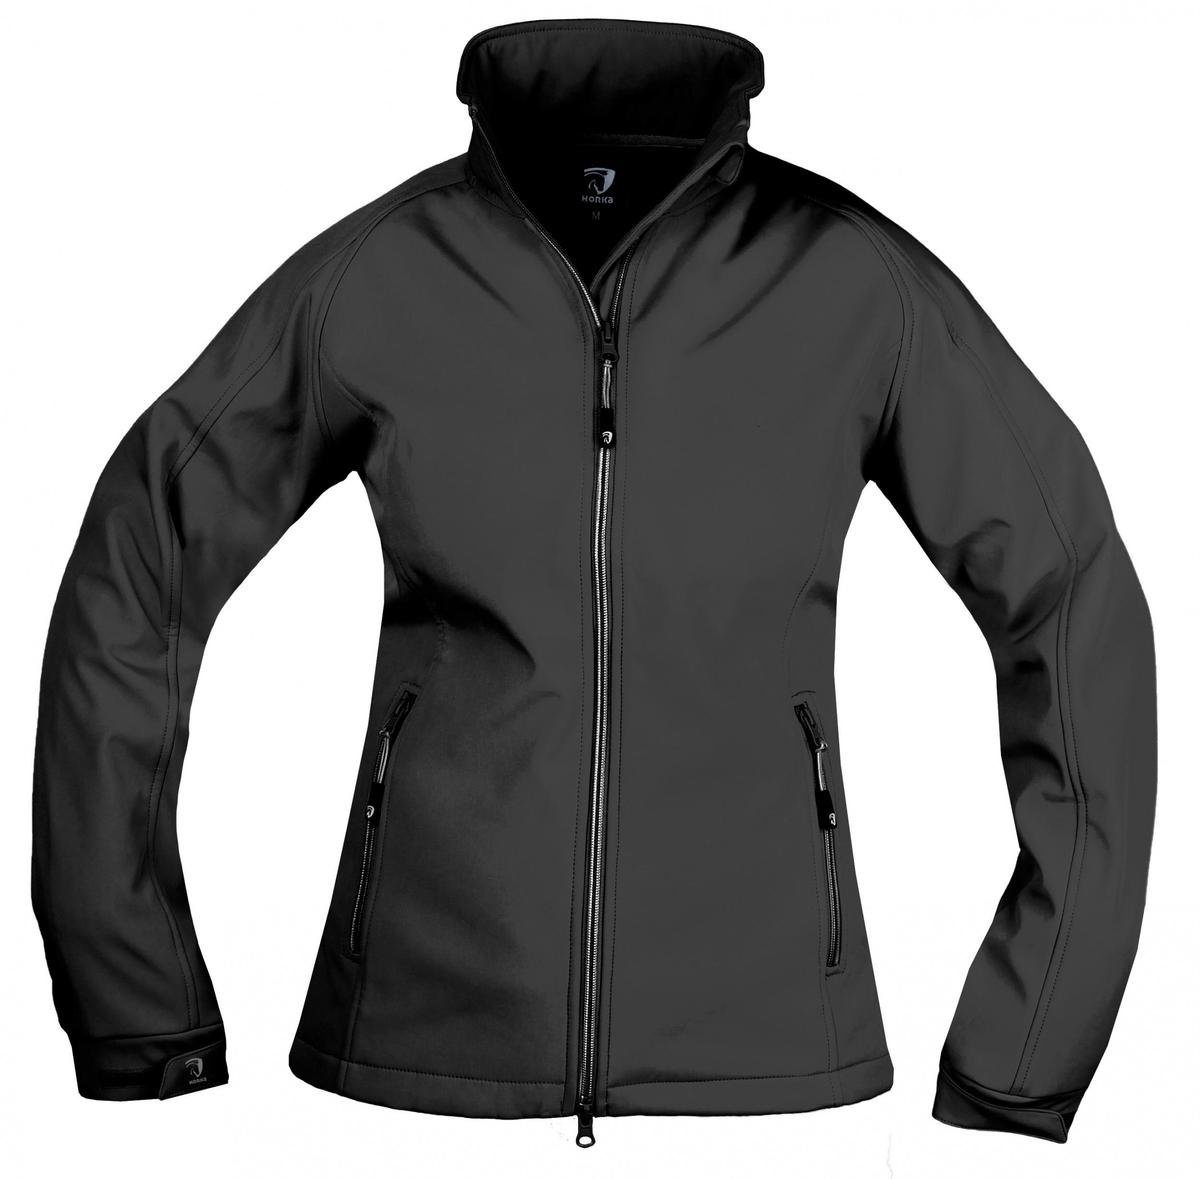 Horka Softshell Jacke schwarz wasserabweisend und winddicht , Größe: XL